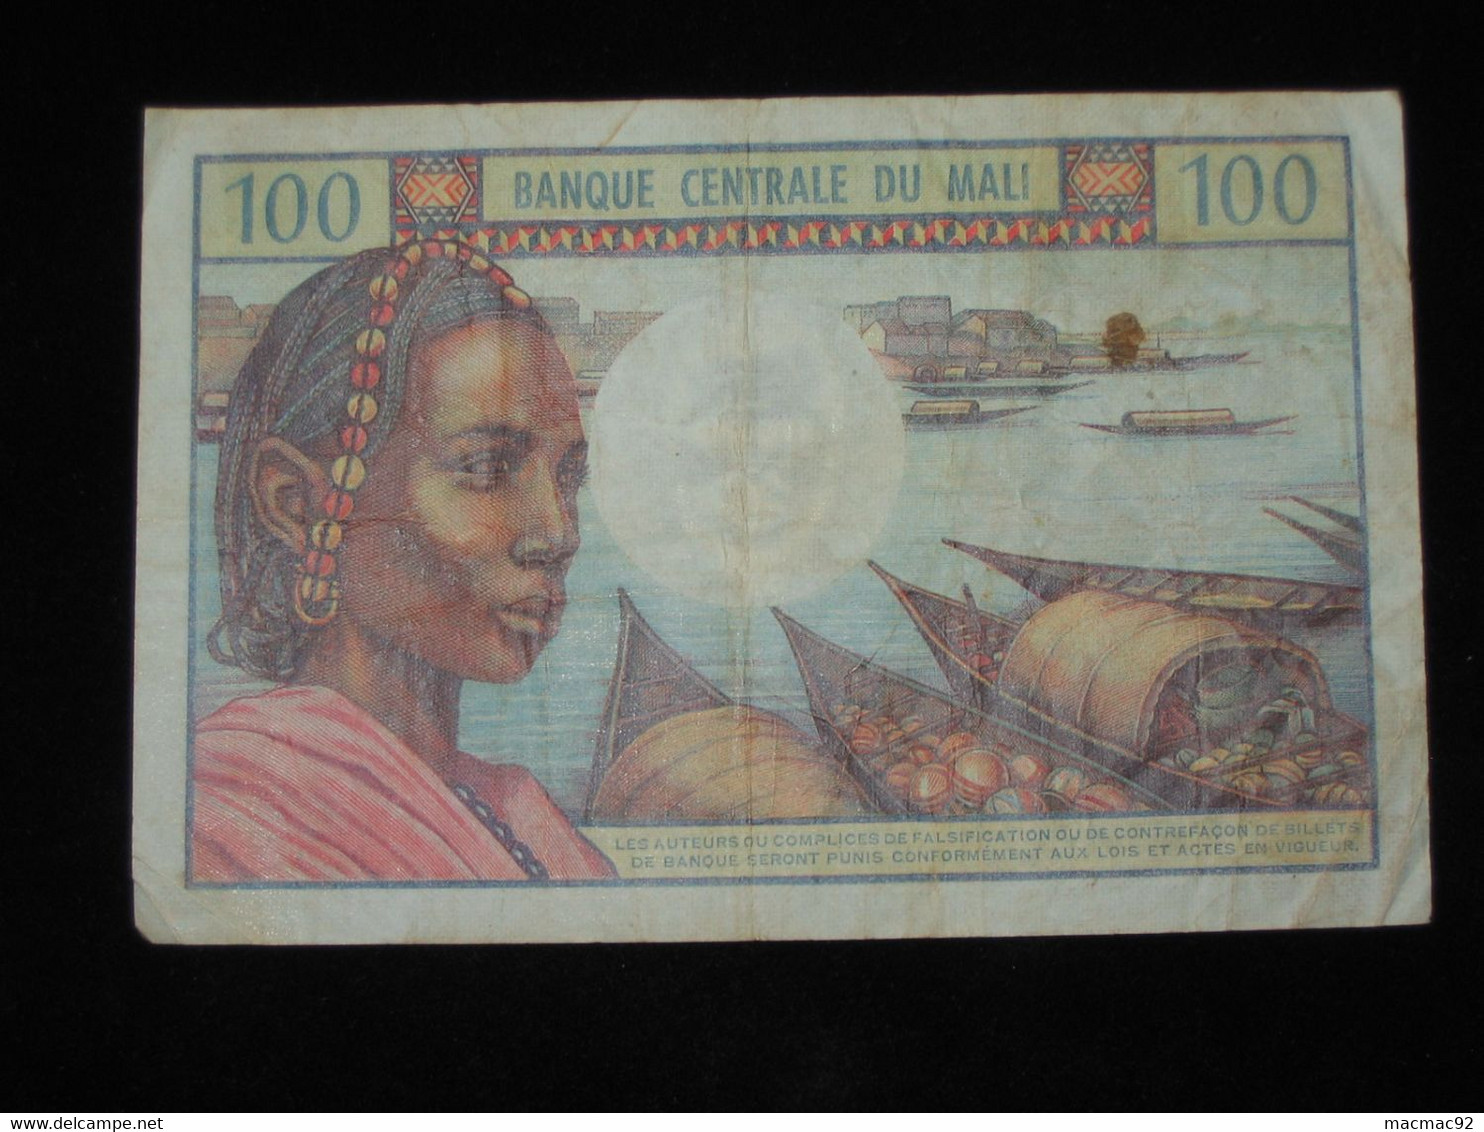 MALI - 100 Francs  BANQUE CENTRALE DU MALI - Billet Non Daté  **** EN ACHAT IMMEDIAT **** - Mali